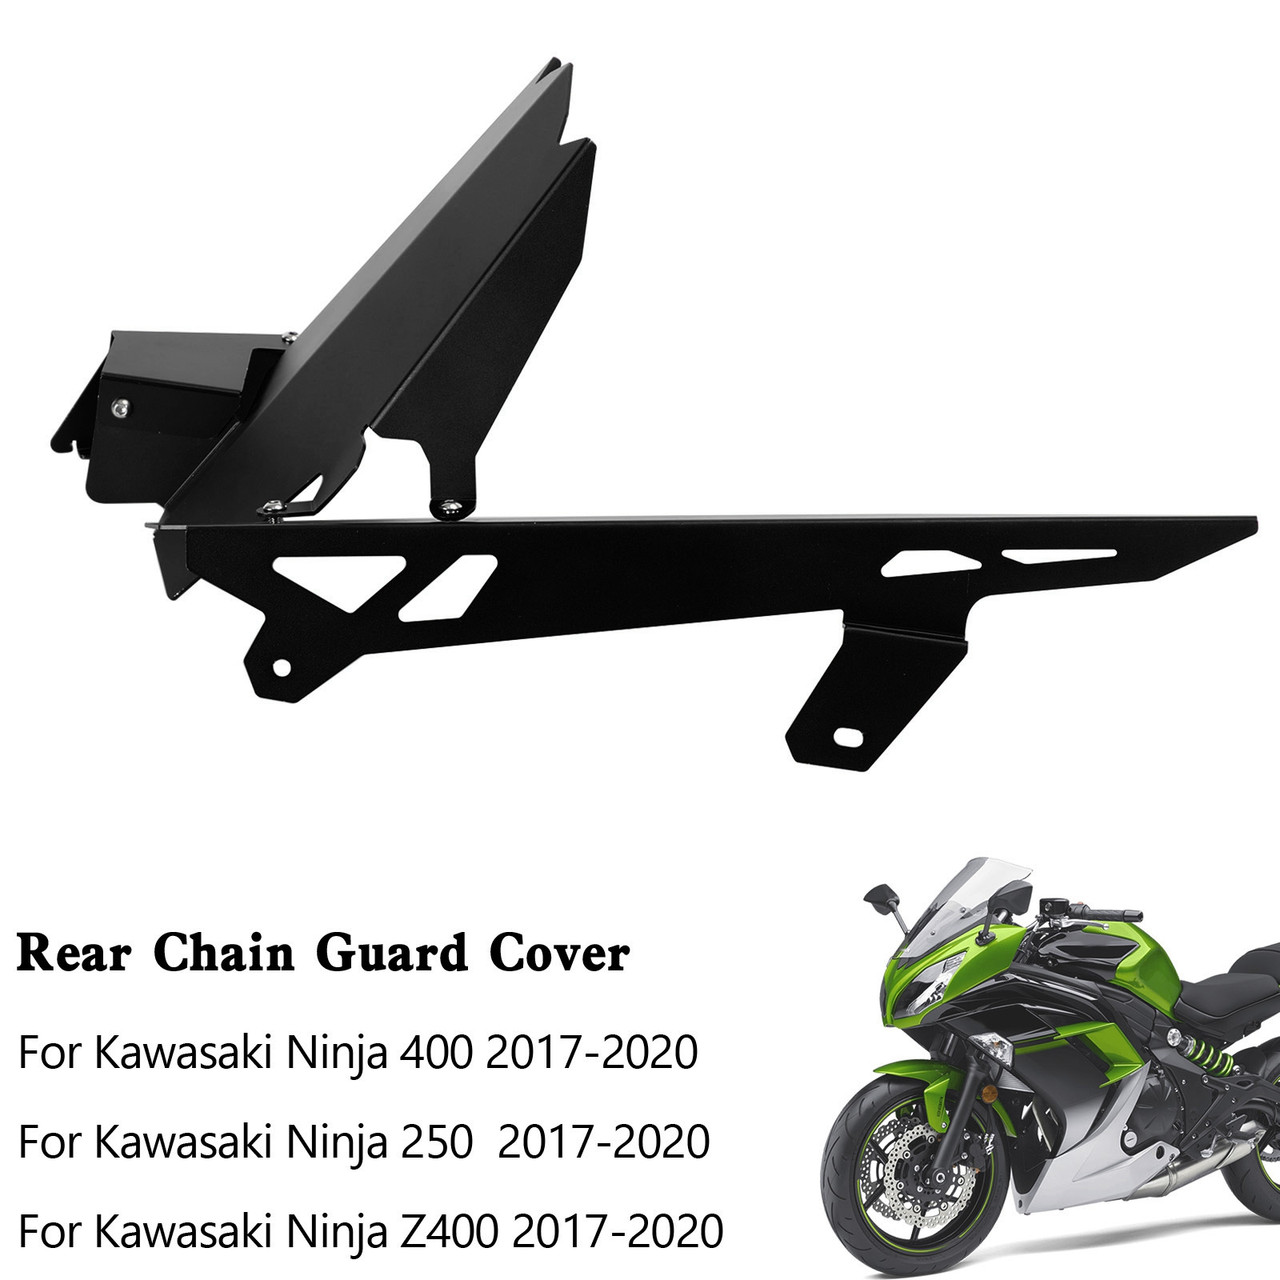 Sprocket Chain Guard Cover For Kawasaki Ninja 400/250 Z400 2017-2020 Black